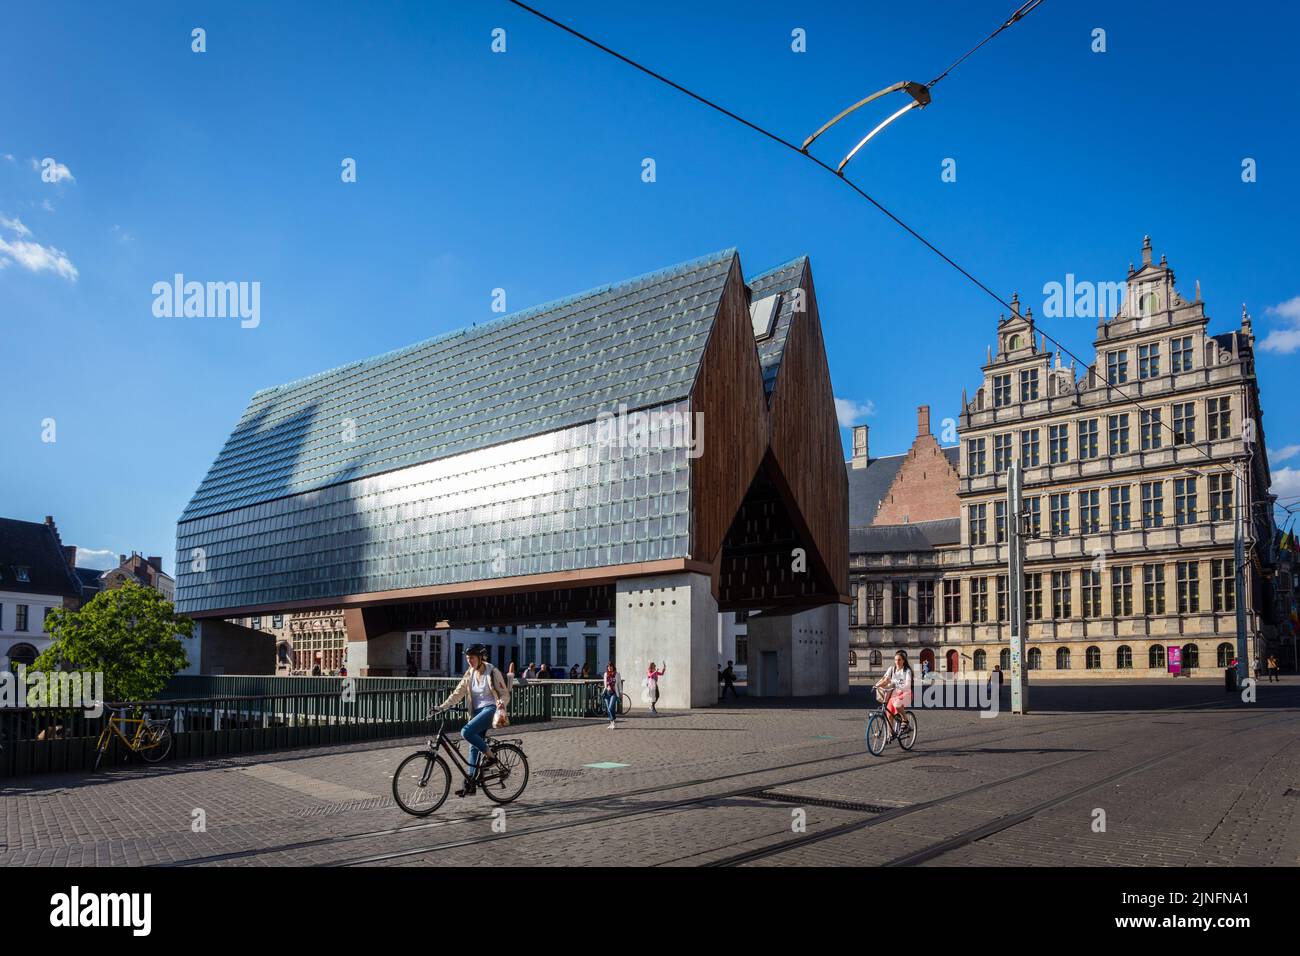 Das Stadshal ist ein modernes Rathaus, das neben dem Glockenturm in Gent gebaut wurde. Belgien. Stockfoto